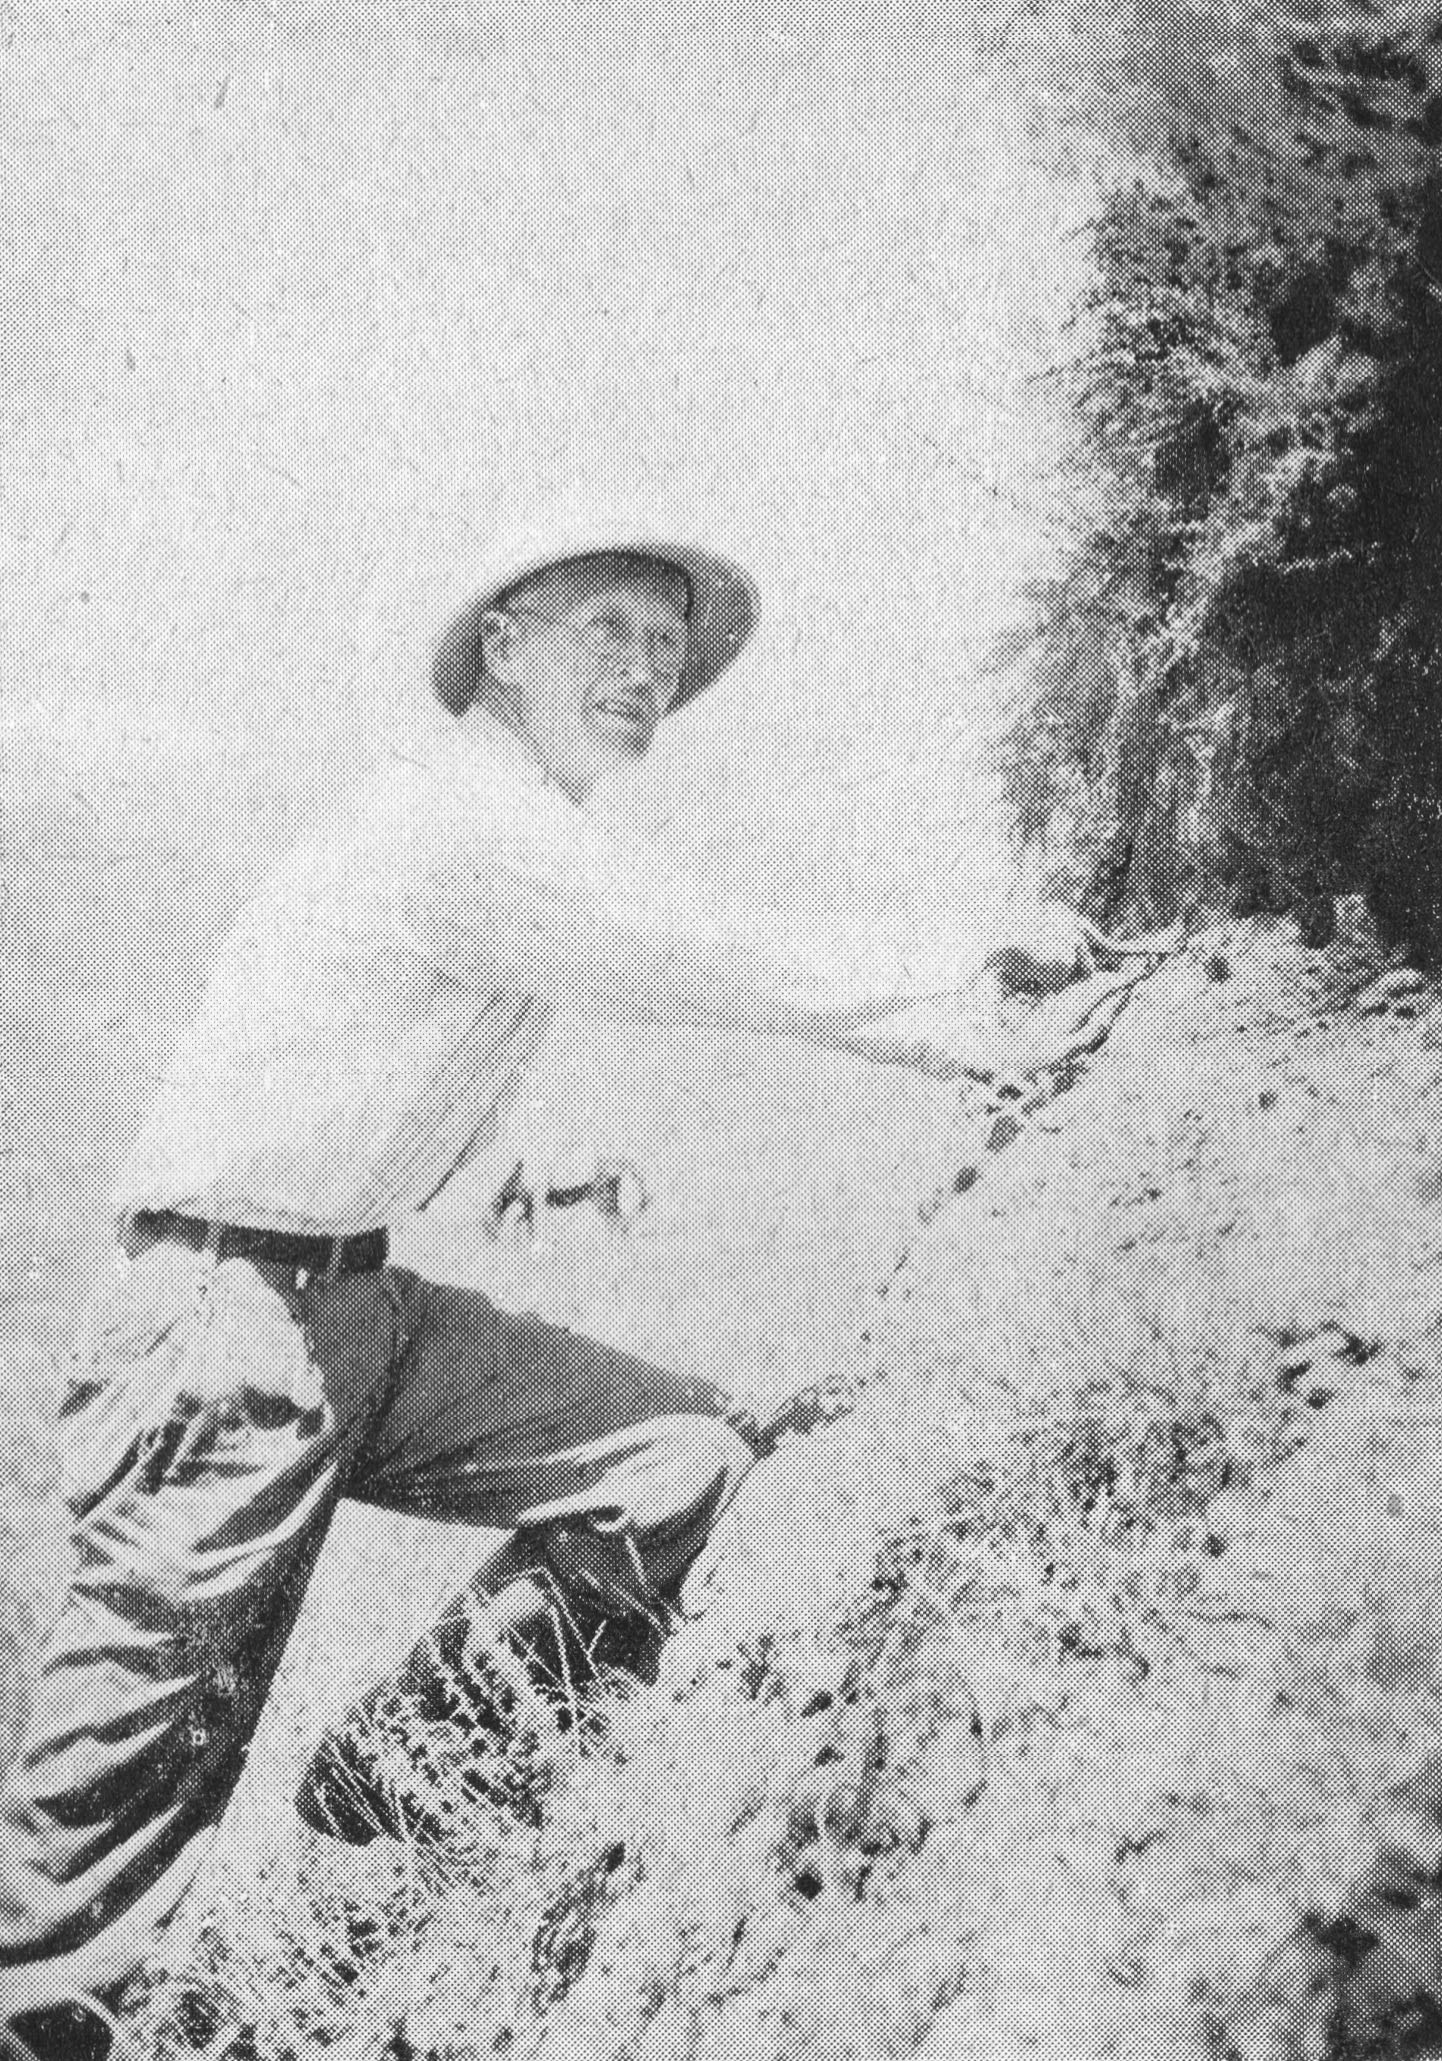 葛维汉，美国人，1884年3月出生于阿肯色州。1911年，他以美国浸理会牧师身份来到中国，在中国生活和工作了三十多年，大部分时间是在四川度过。1933年冬，他与林名均一起主持了广汉三星堆的首次考古发掘，揭开了“三星堆文化”的研究序幕。  维基百科 图